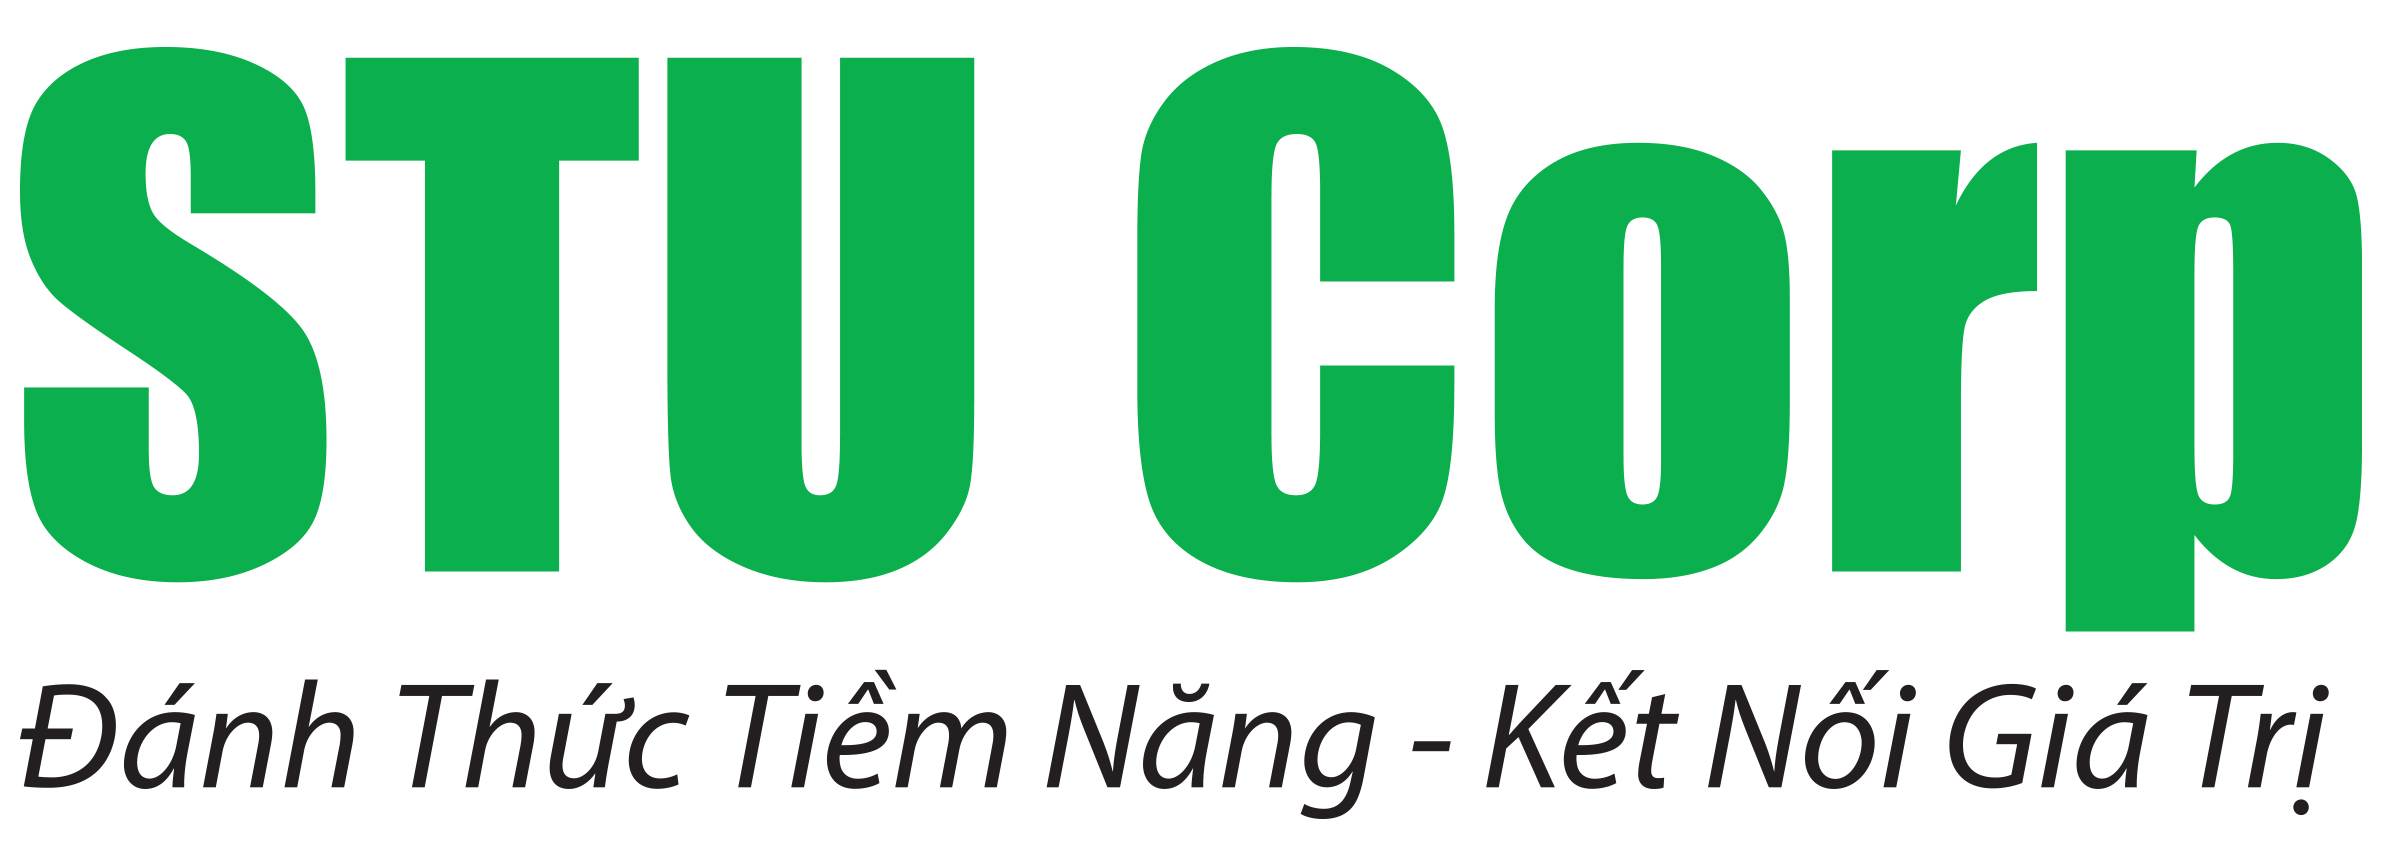 Logo_STU Corp